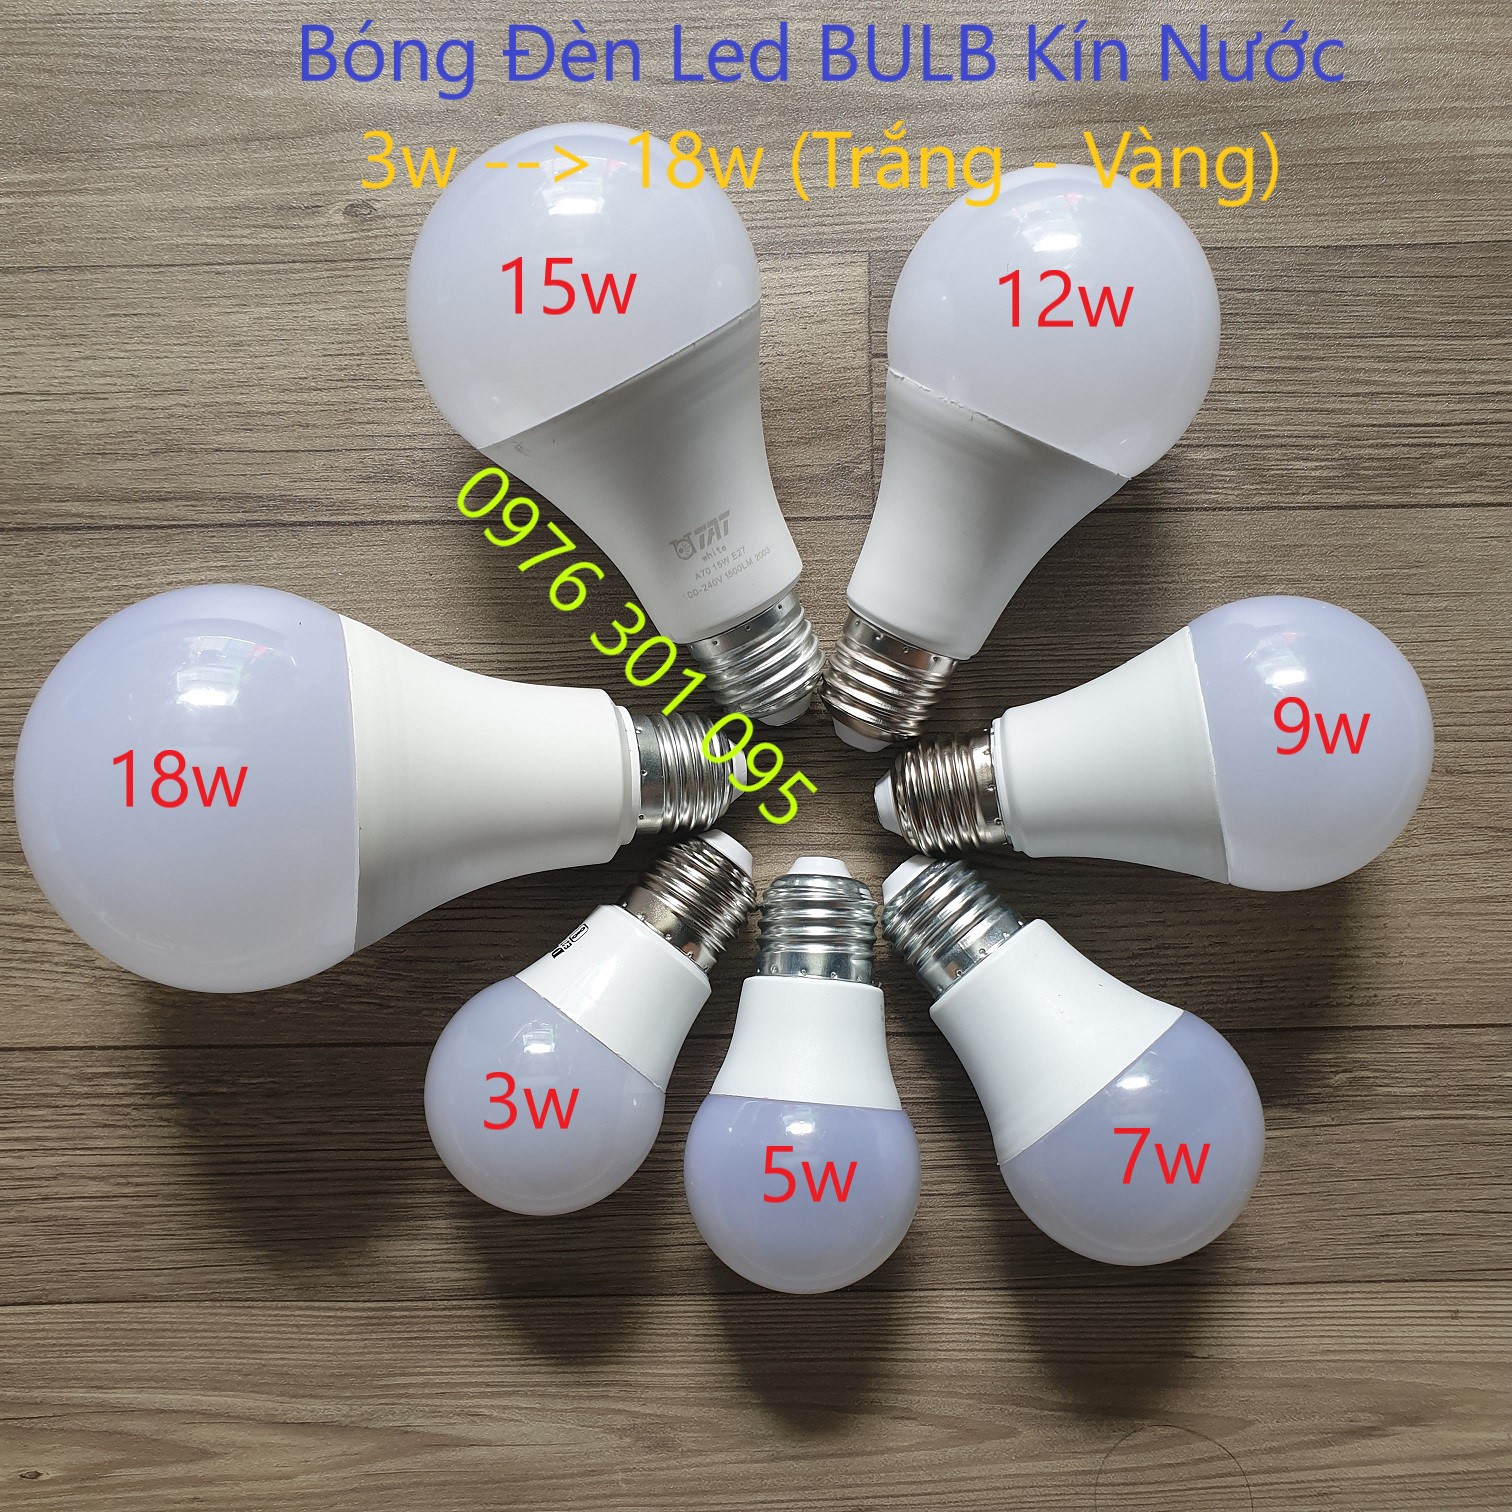 Bóng đèn LED BULB kín nước 3w đến 18w